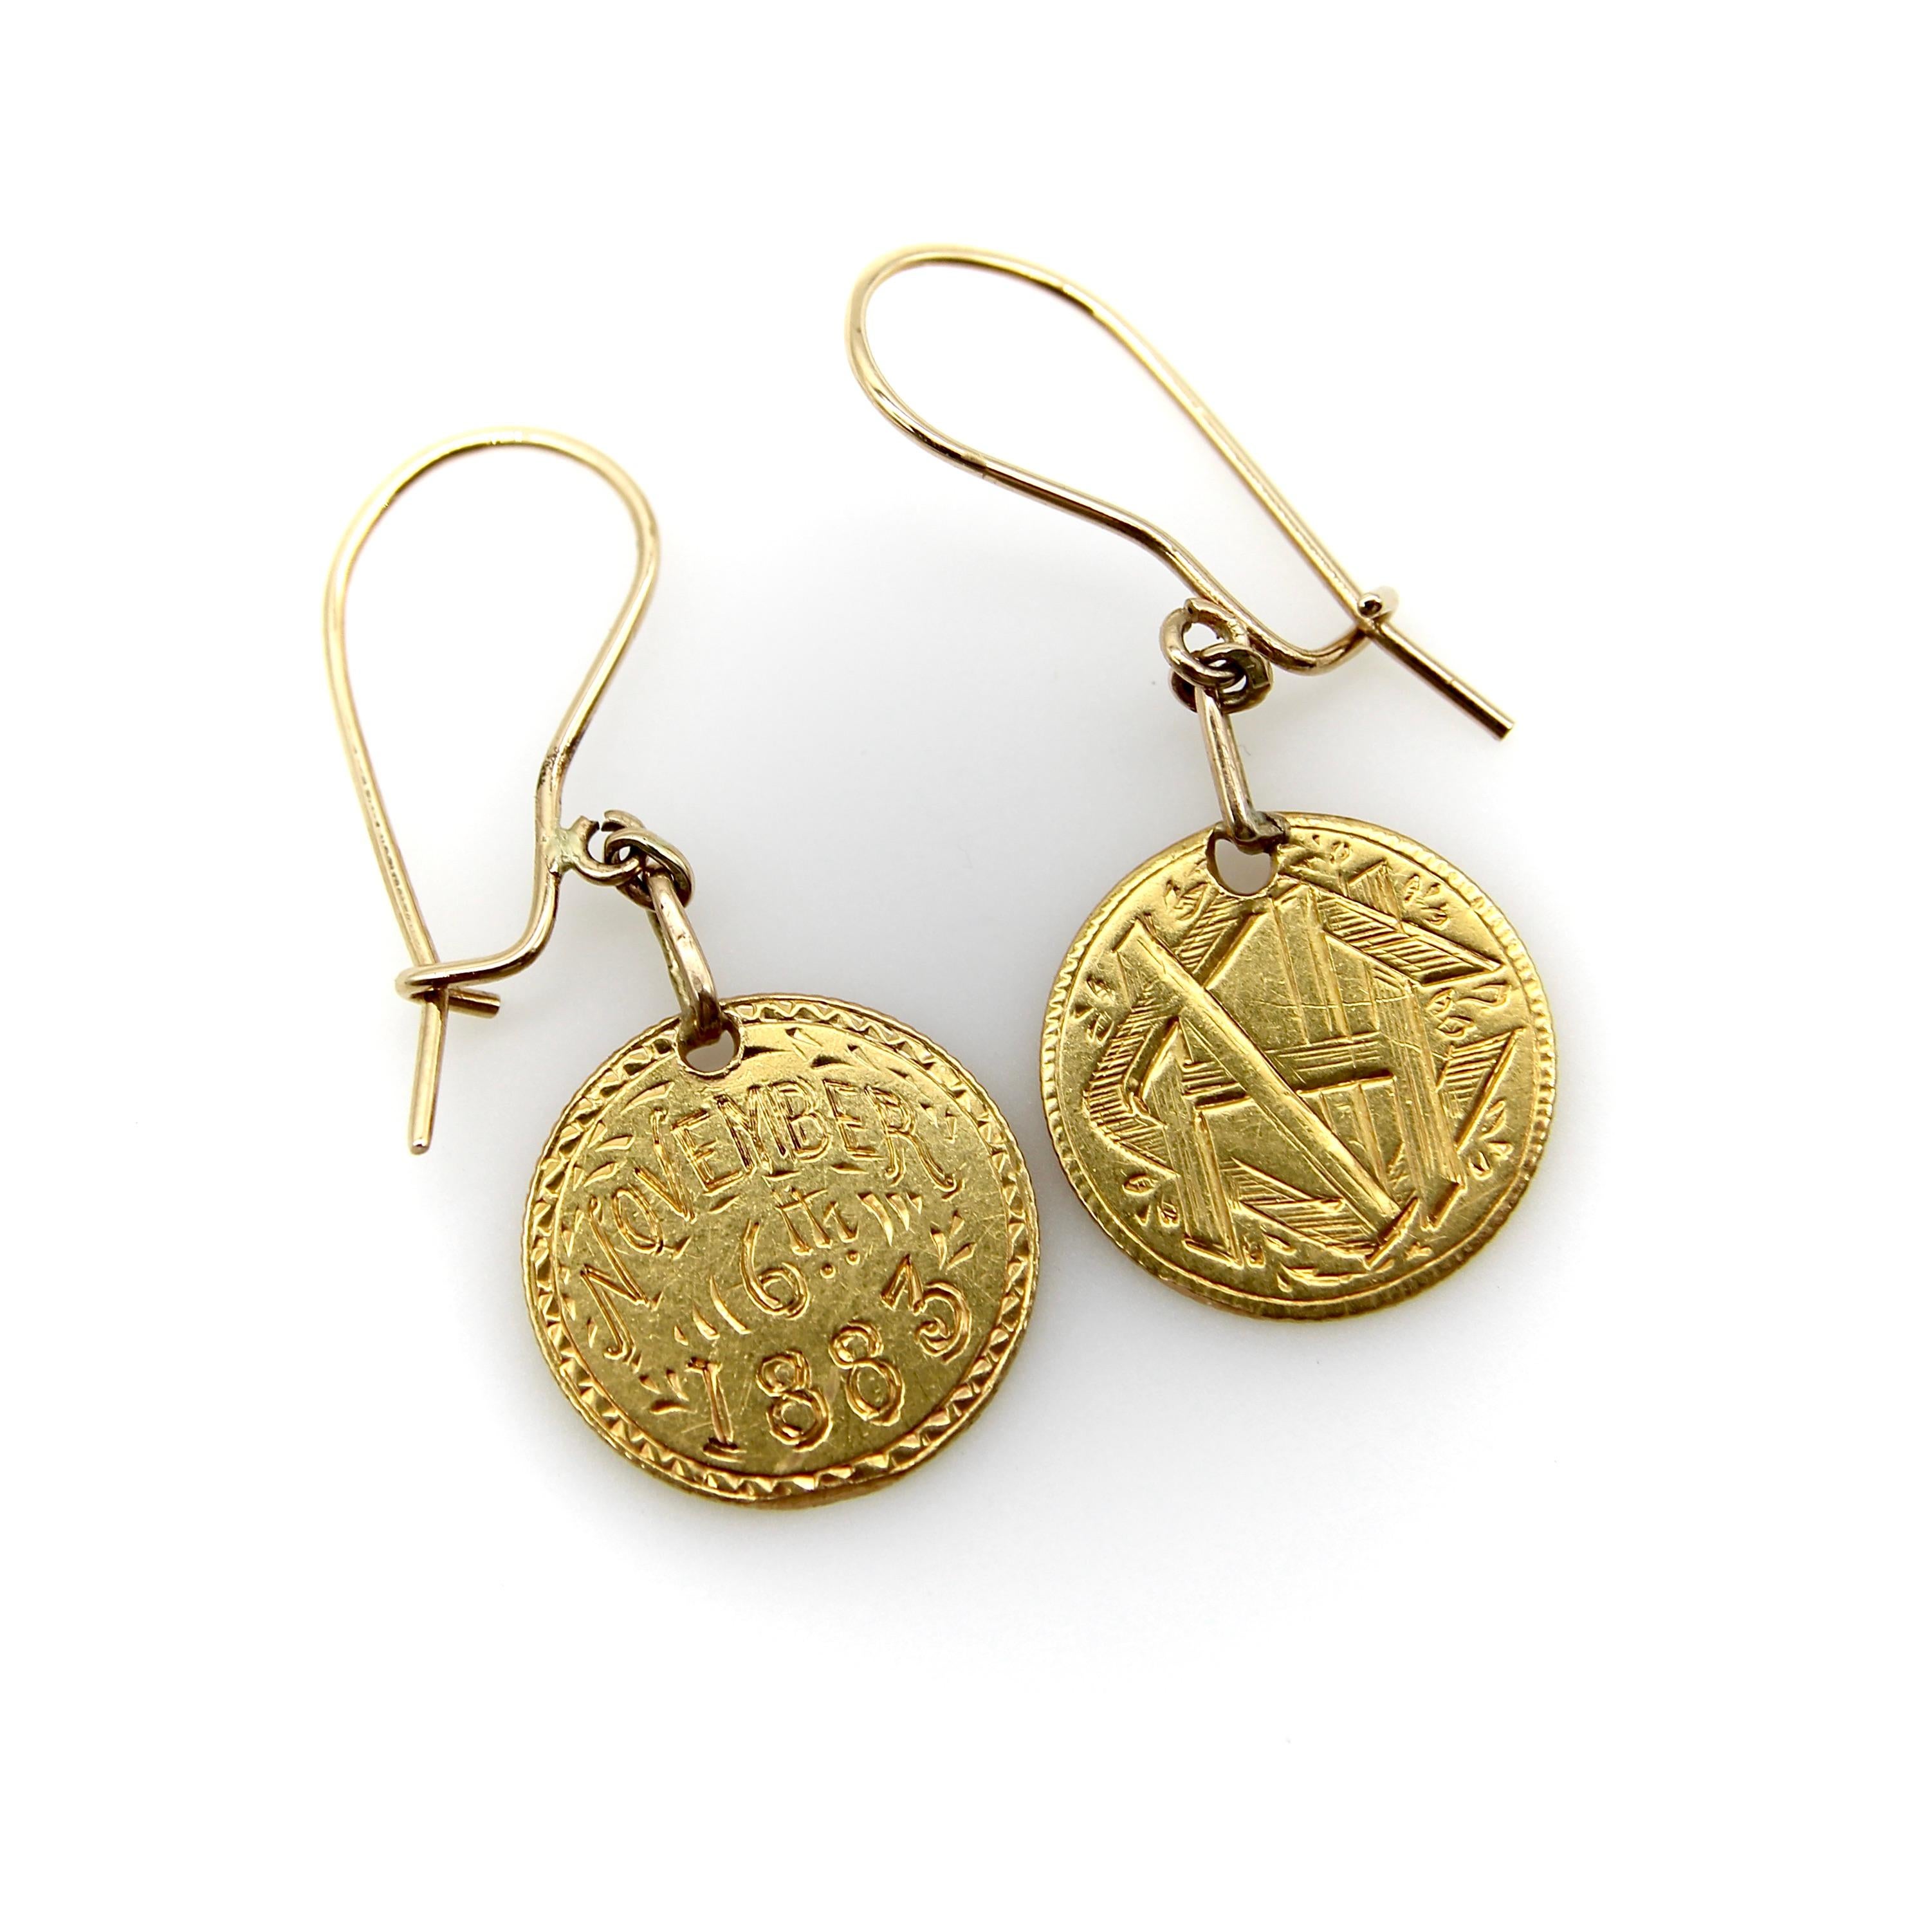 CIRCA 1883, diese Ohrringe aus 22k Gold haben eine interessante und poetische Geschichte. Ursprünglich waren es Münzen, die von Hand eingraviert wurden, um als 